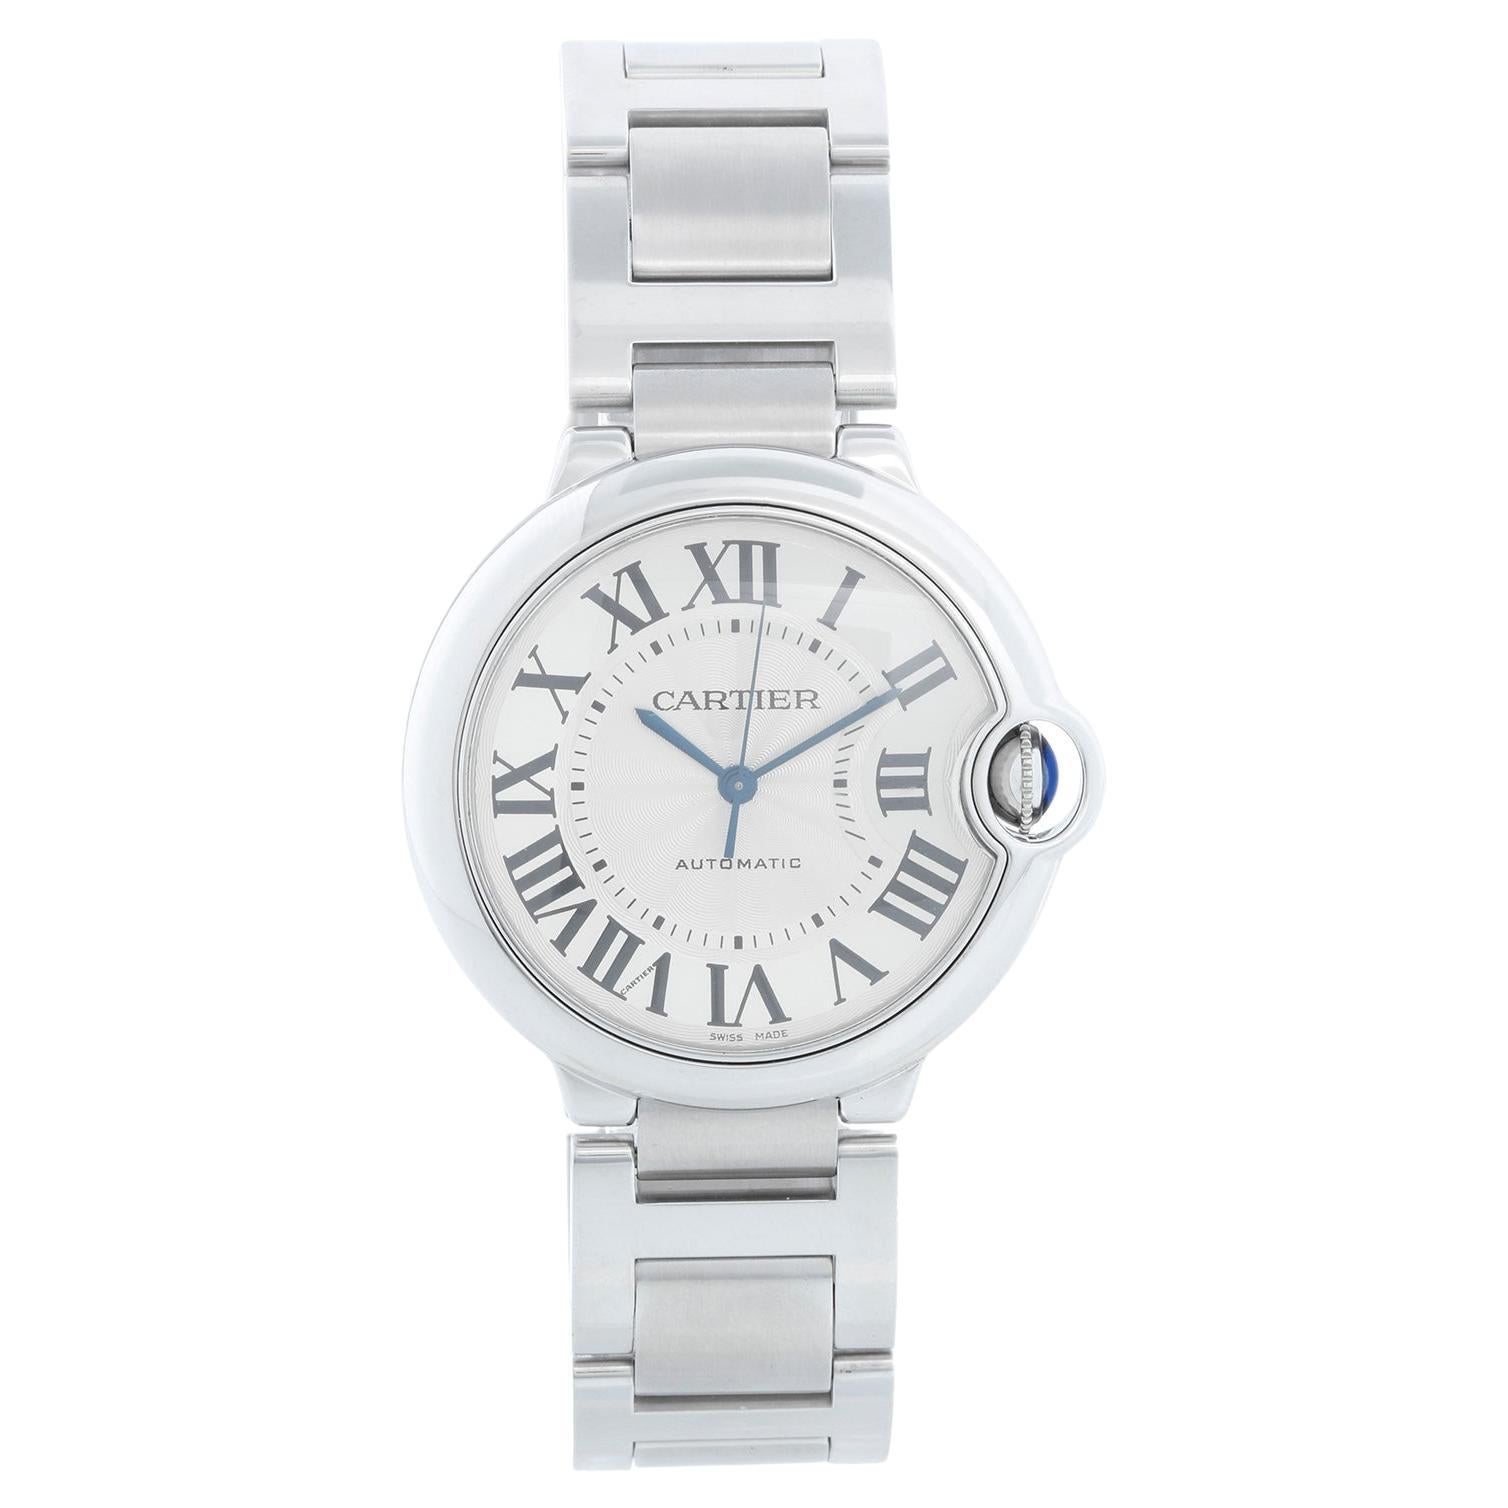 Cartier Ballon Bleu Midsize Stainless Steel Watch W6920046 3284 For Sale